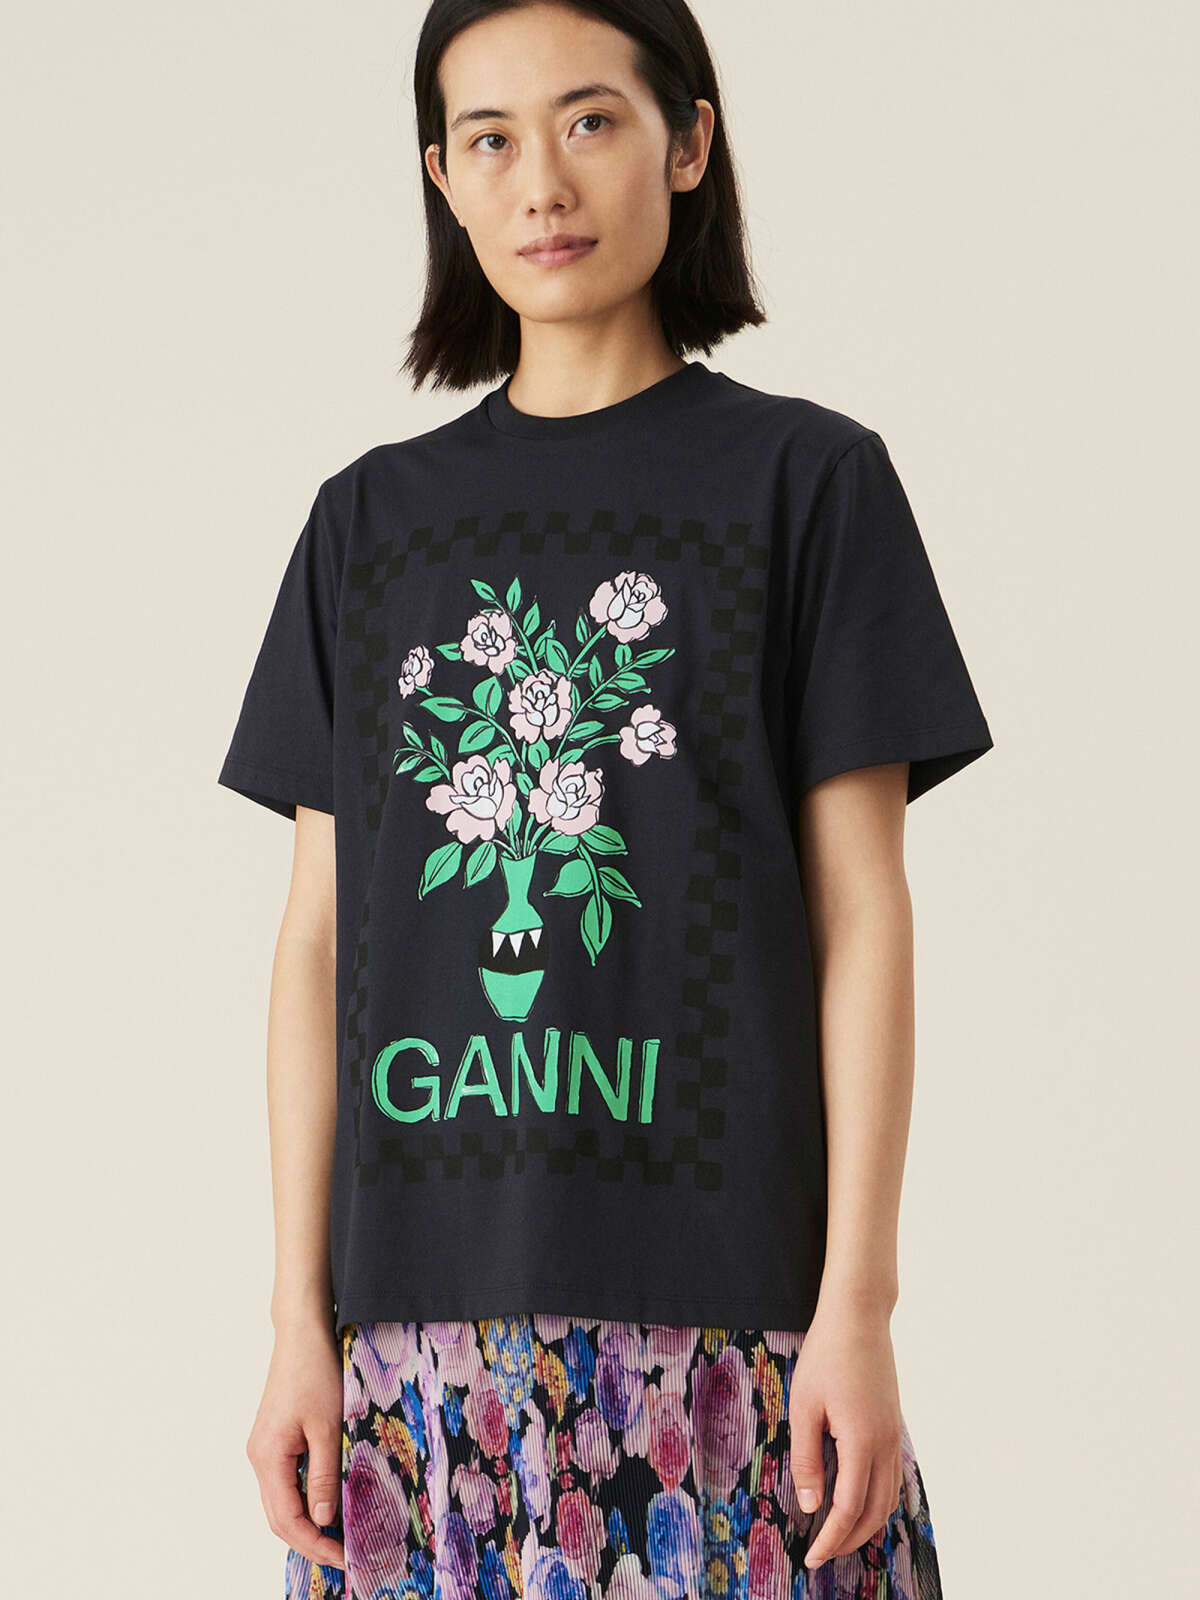 brugerdefinerede eksplicit Meget sur T-shirt Ganni